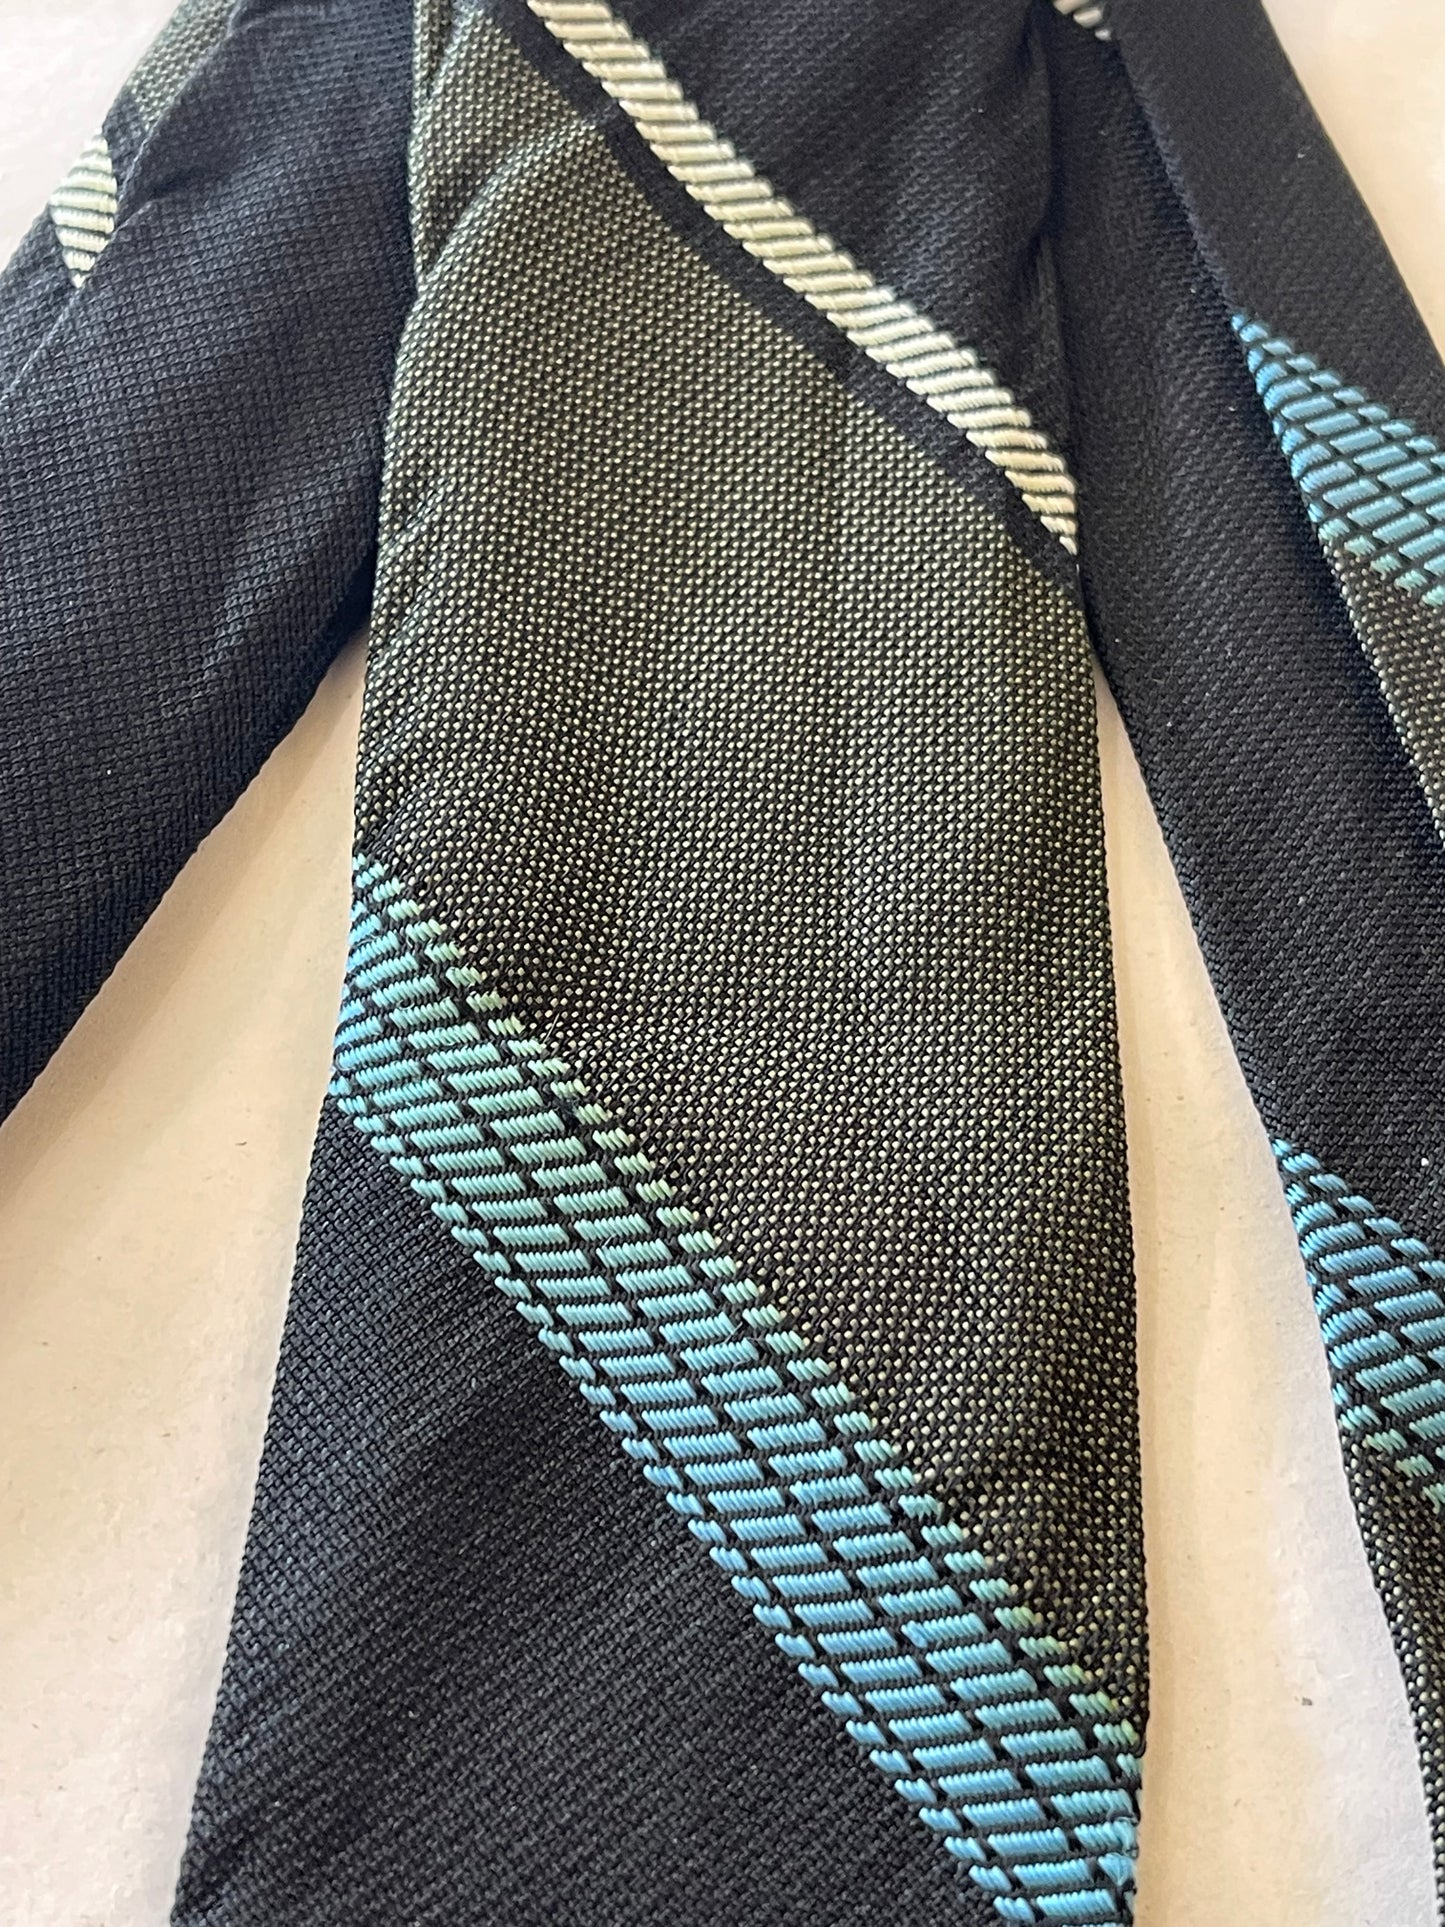 Green Stripe Necktie